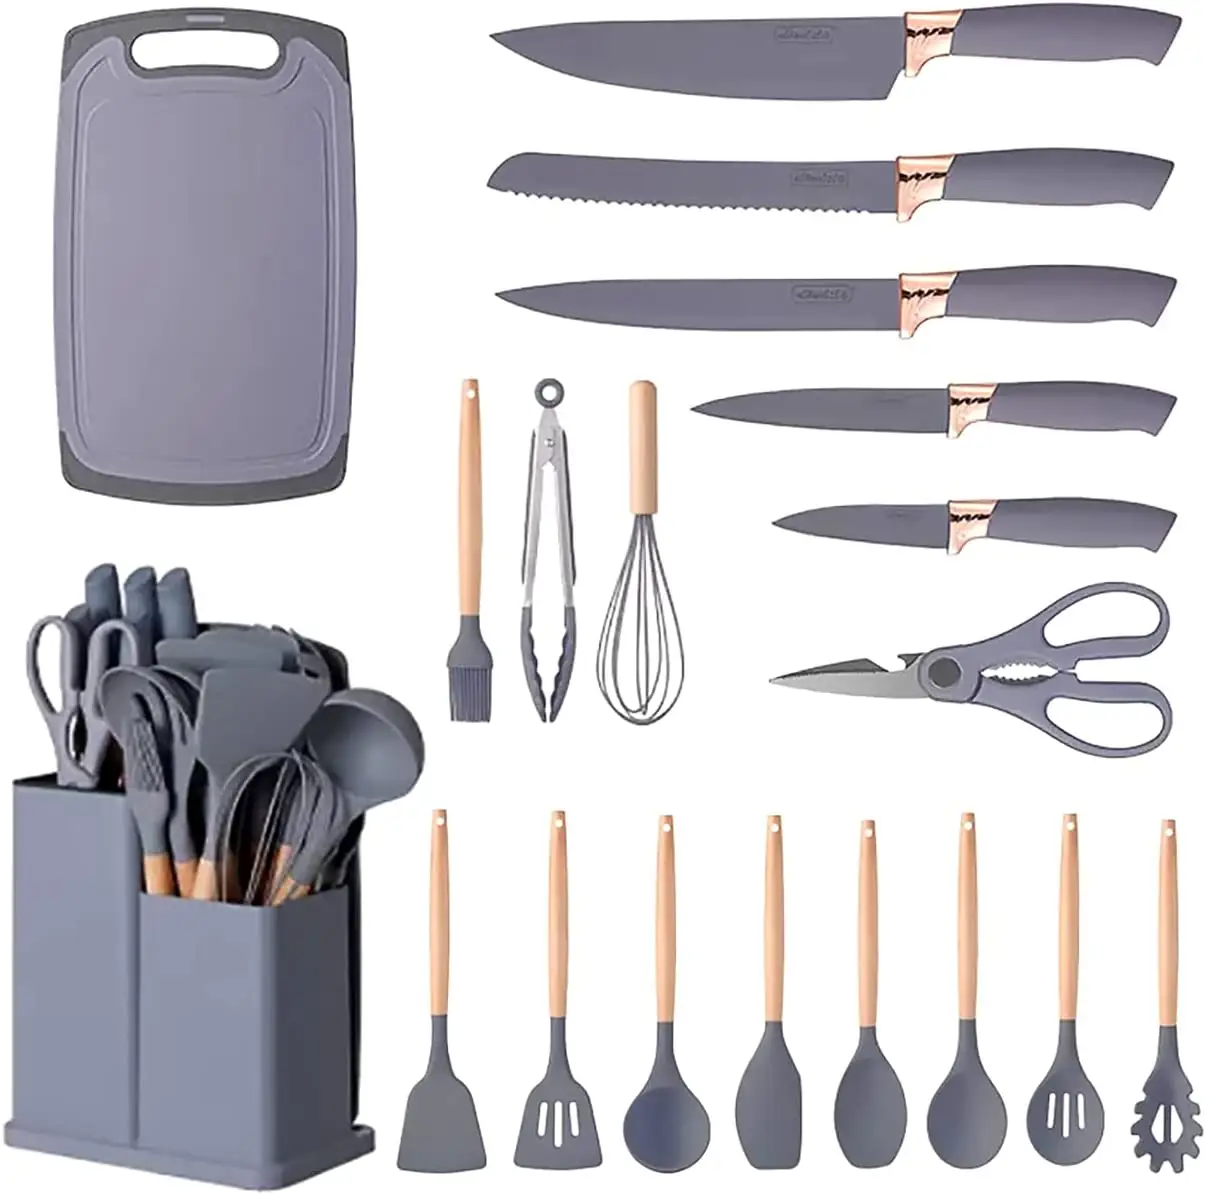 Utensílios de cozinha de 17 peças, utensílios de cozinha, utensílios de cozinha, acessórios de cozinha, utensílios de cozinha com faca de aço inoxidável